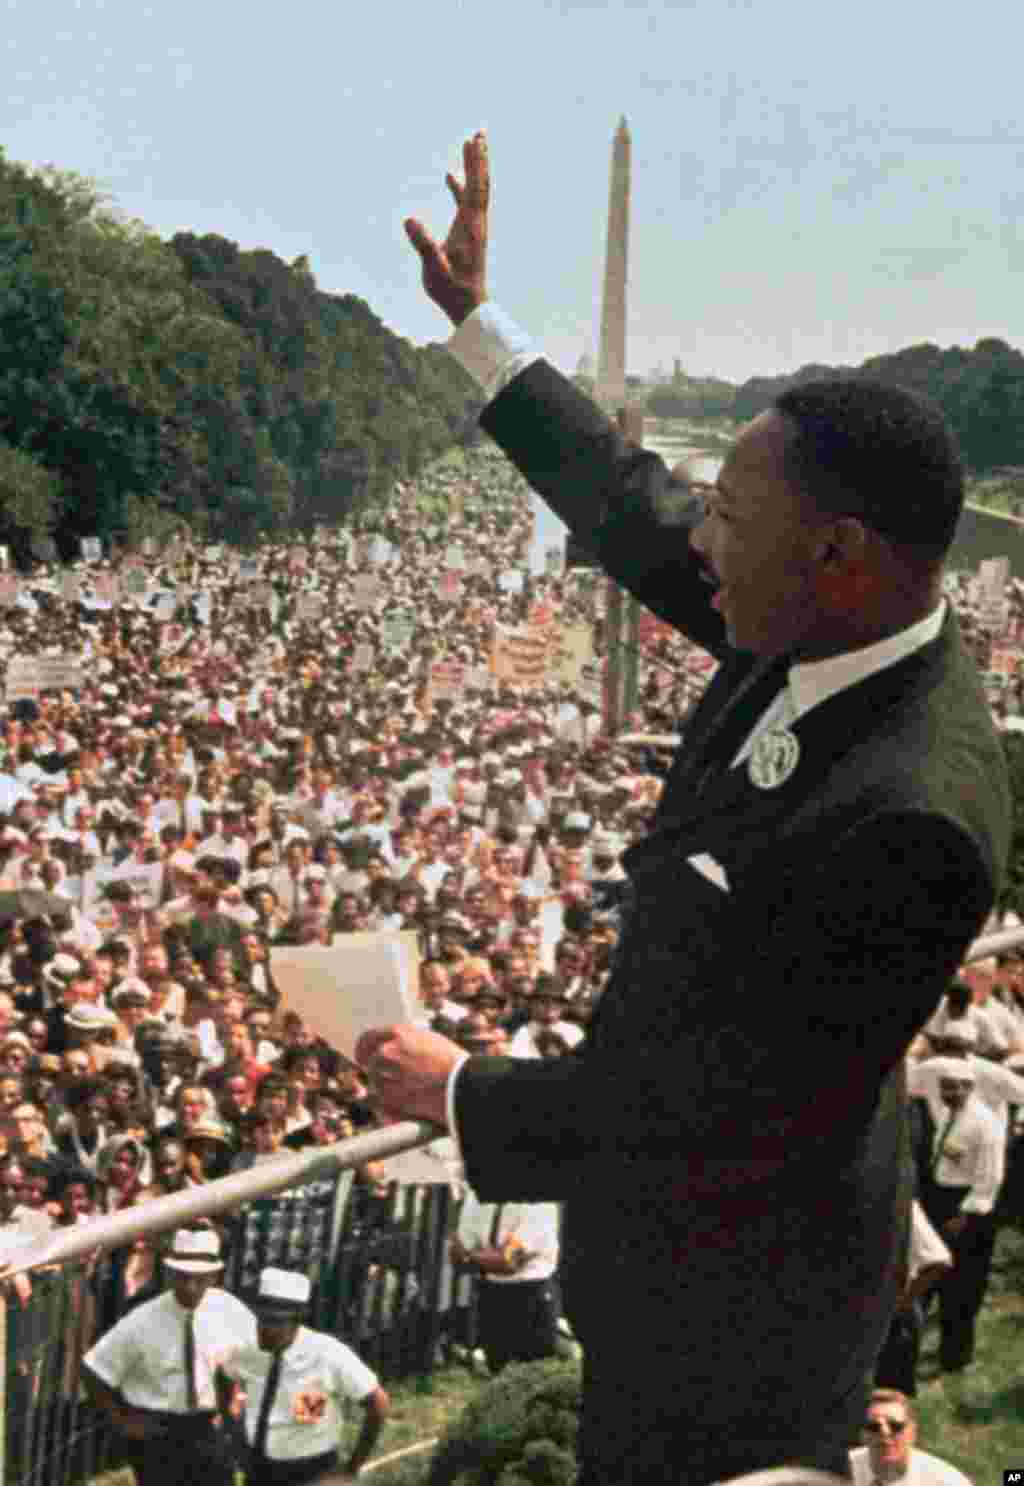 Dr Martin Luther King Jr. akiwashukuru waandamanaji katika eneo la Lincoln Memorial kwa kusikiliza hotuba yake ya &quot;Nina ndoto&quot; (I have a dream&quot; ) huko Washington, Agosti 28, 1963.